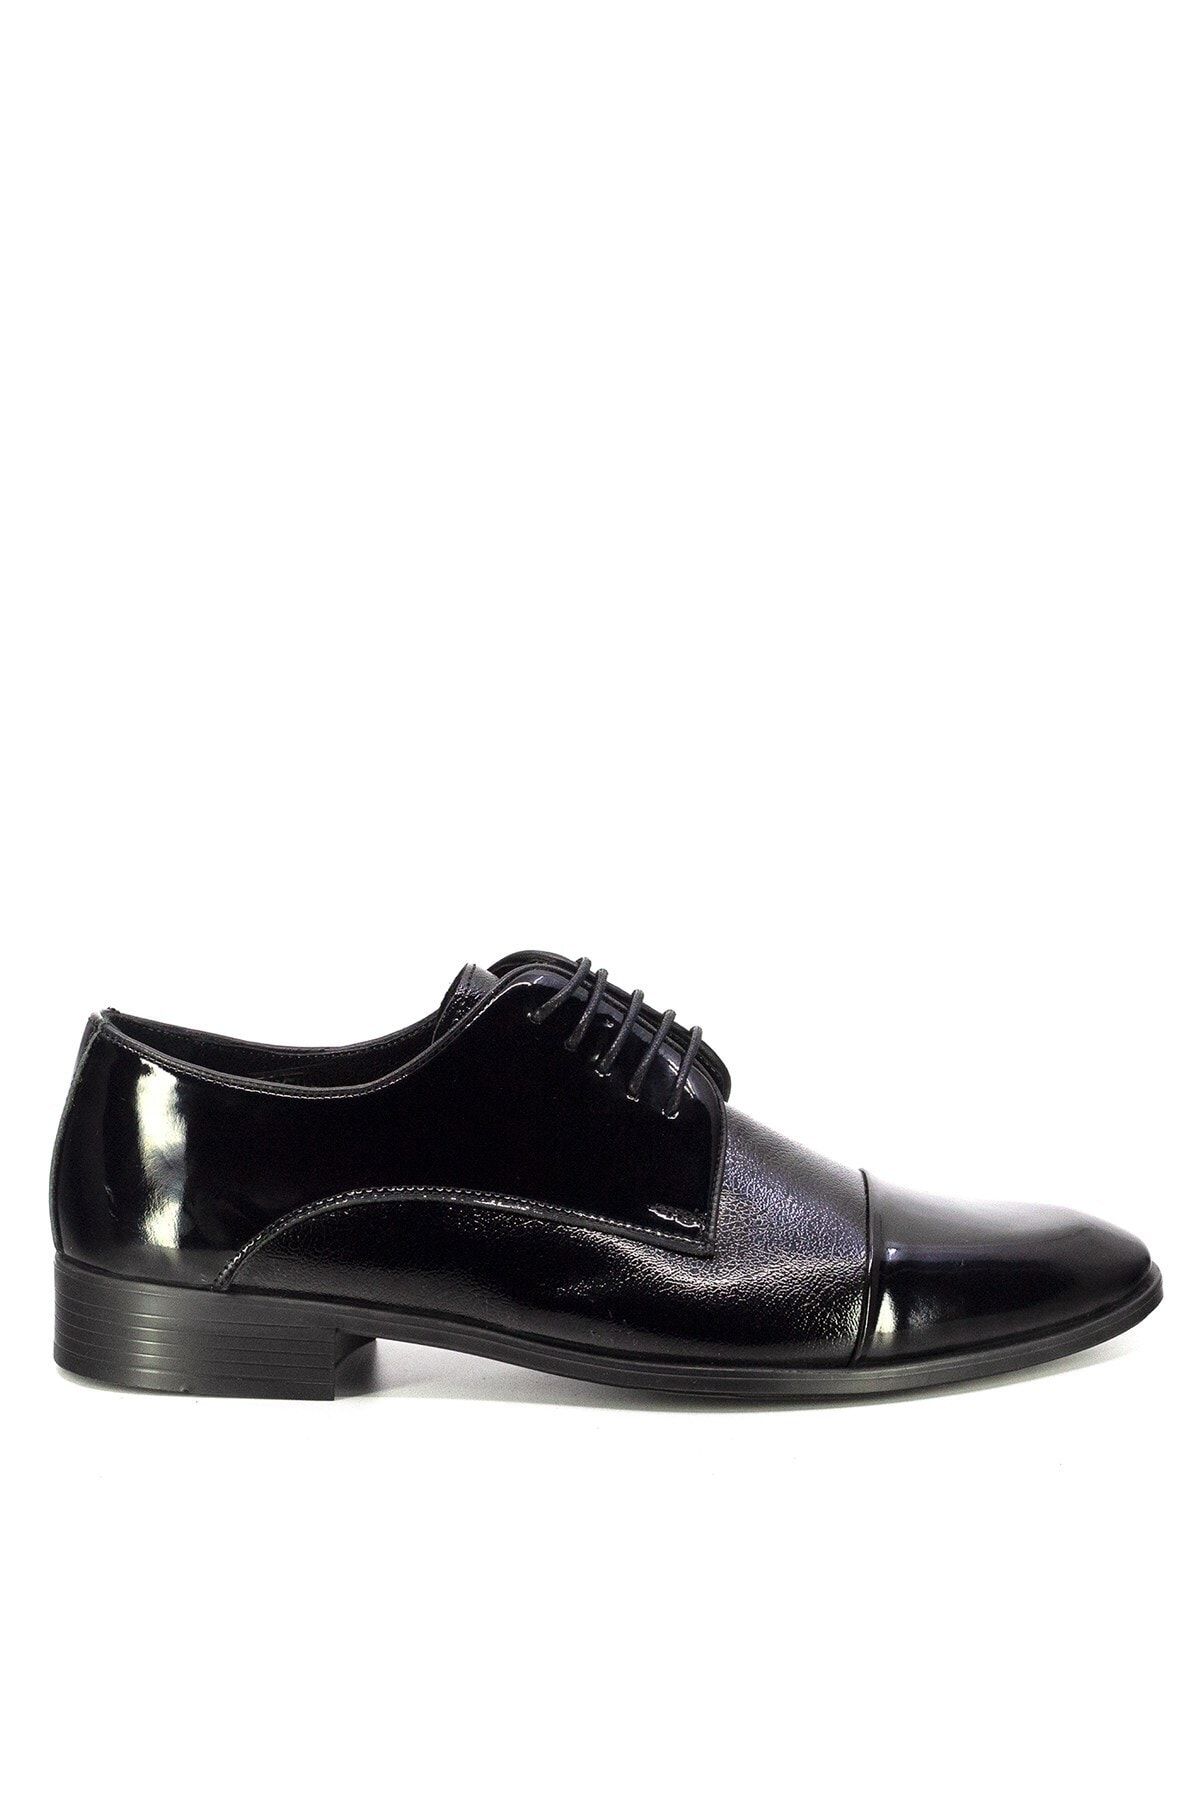 MARCOMEN 20y 153-5080 Erkek Deri Klasik Ayakkabı Siyah